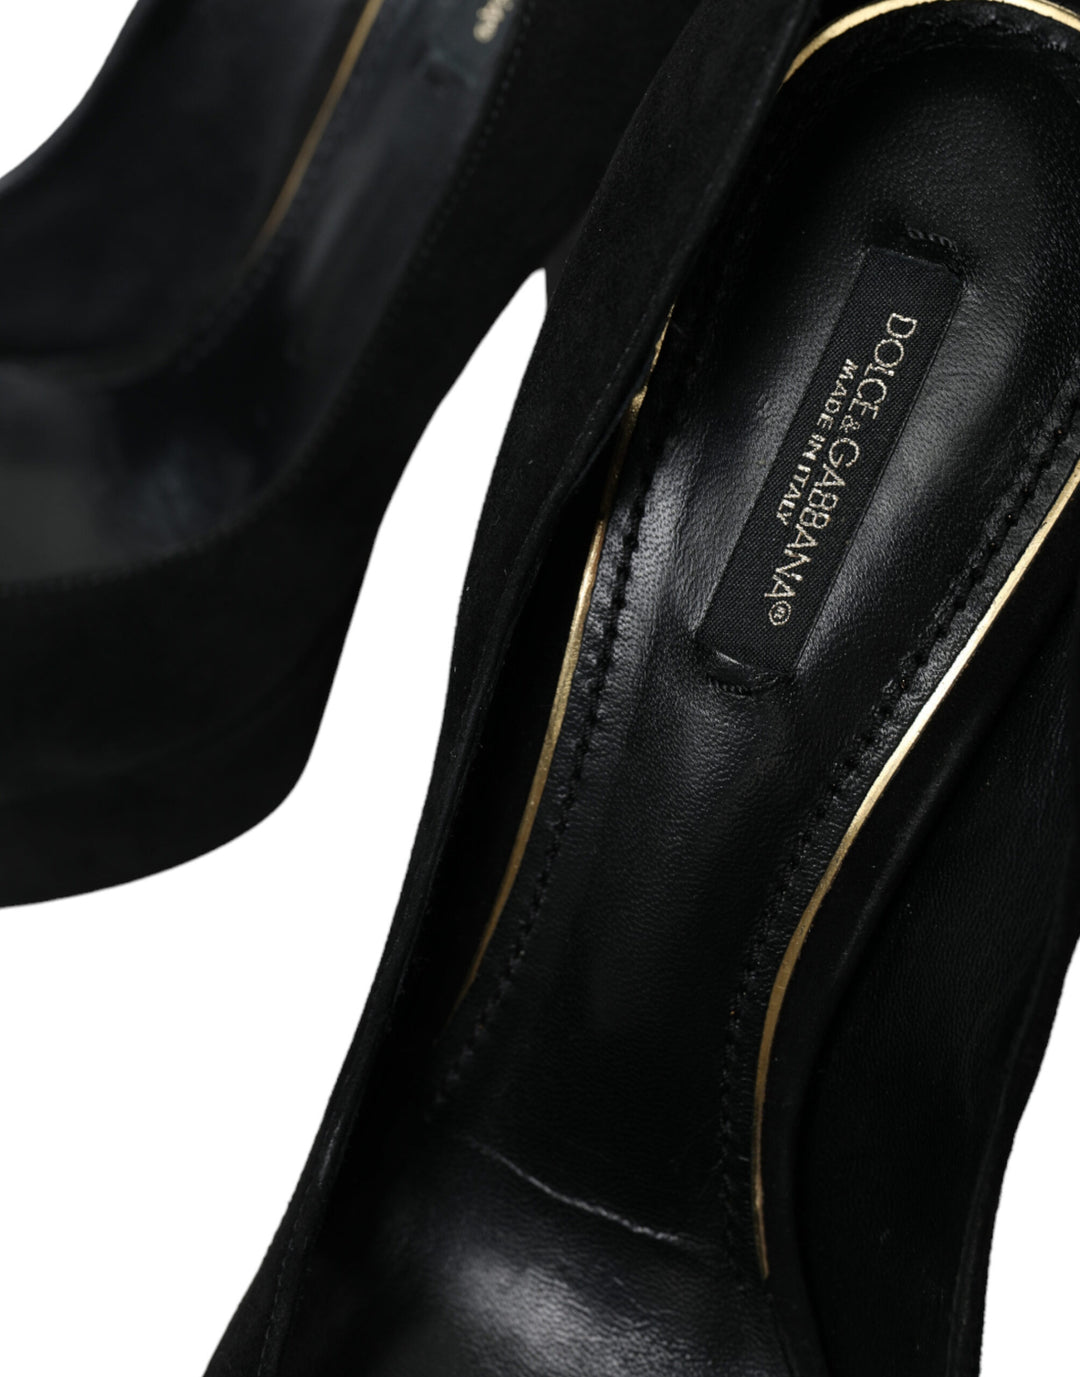 Dolce & Gabbana Black Suede Heeled Pumps Sophistication